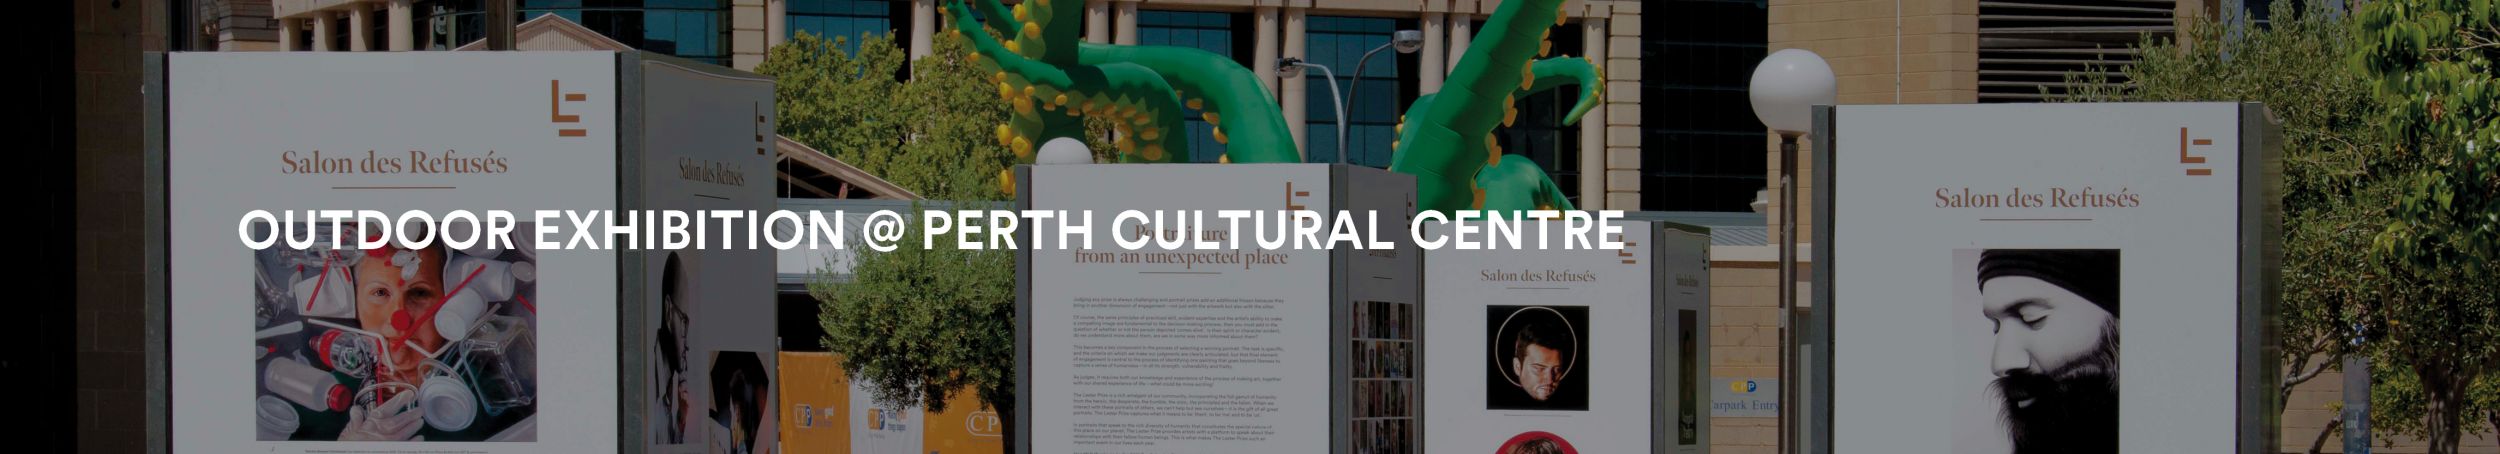 Outdoor Exhibition - Salon des Refusés & Youth Finalists | Perth Cultural Centre